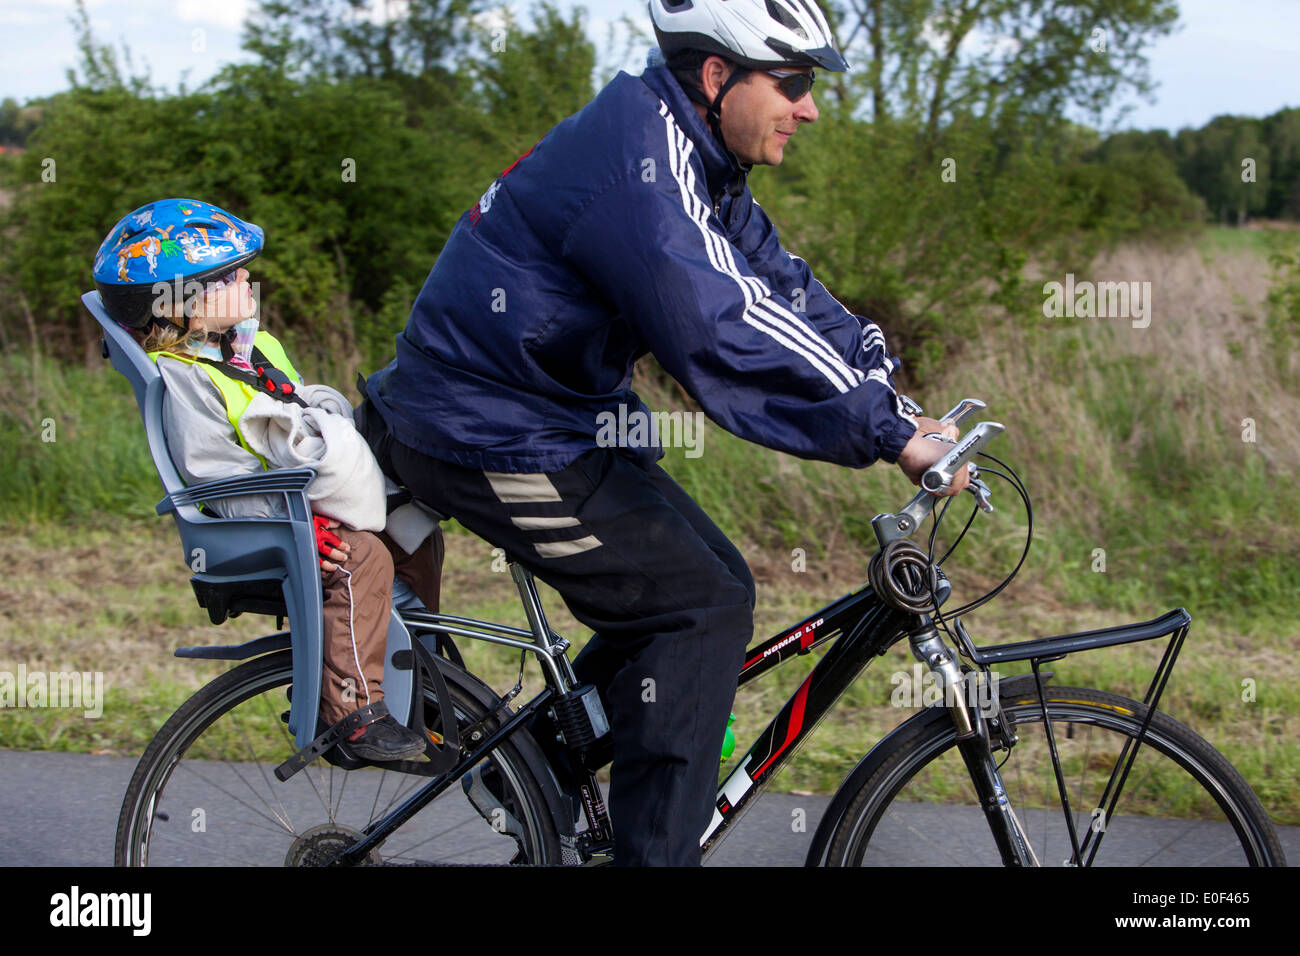 Balade homme et enfant, casque de vélo, piste cyclable, enfant sur le siège de vélo Banque D'Images